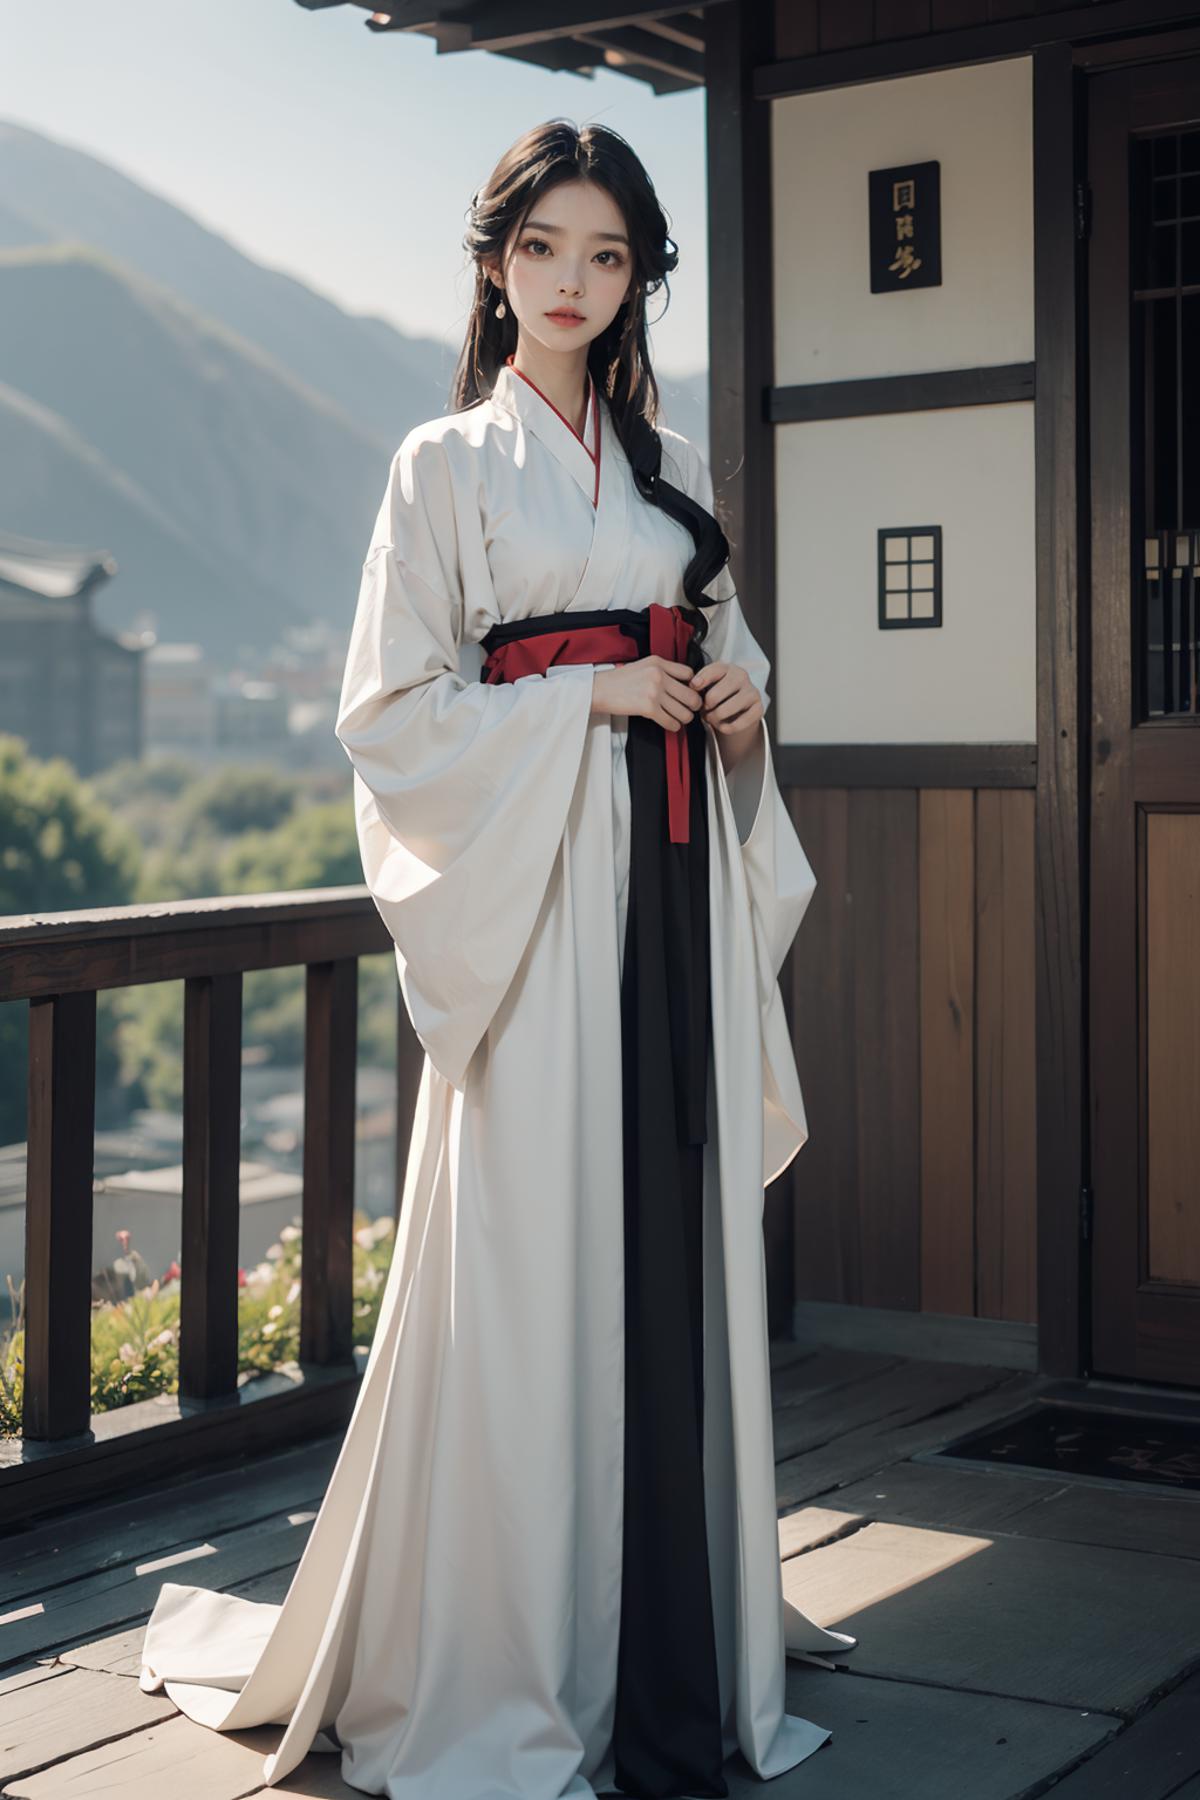 国风素雅 | Elegant Chinese style image by aistha